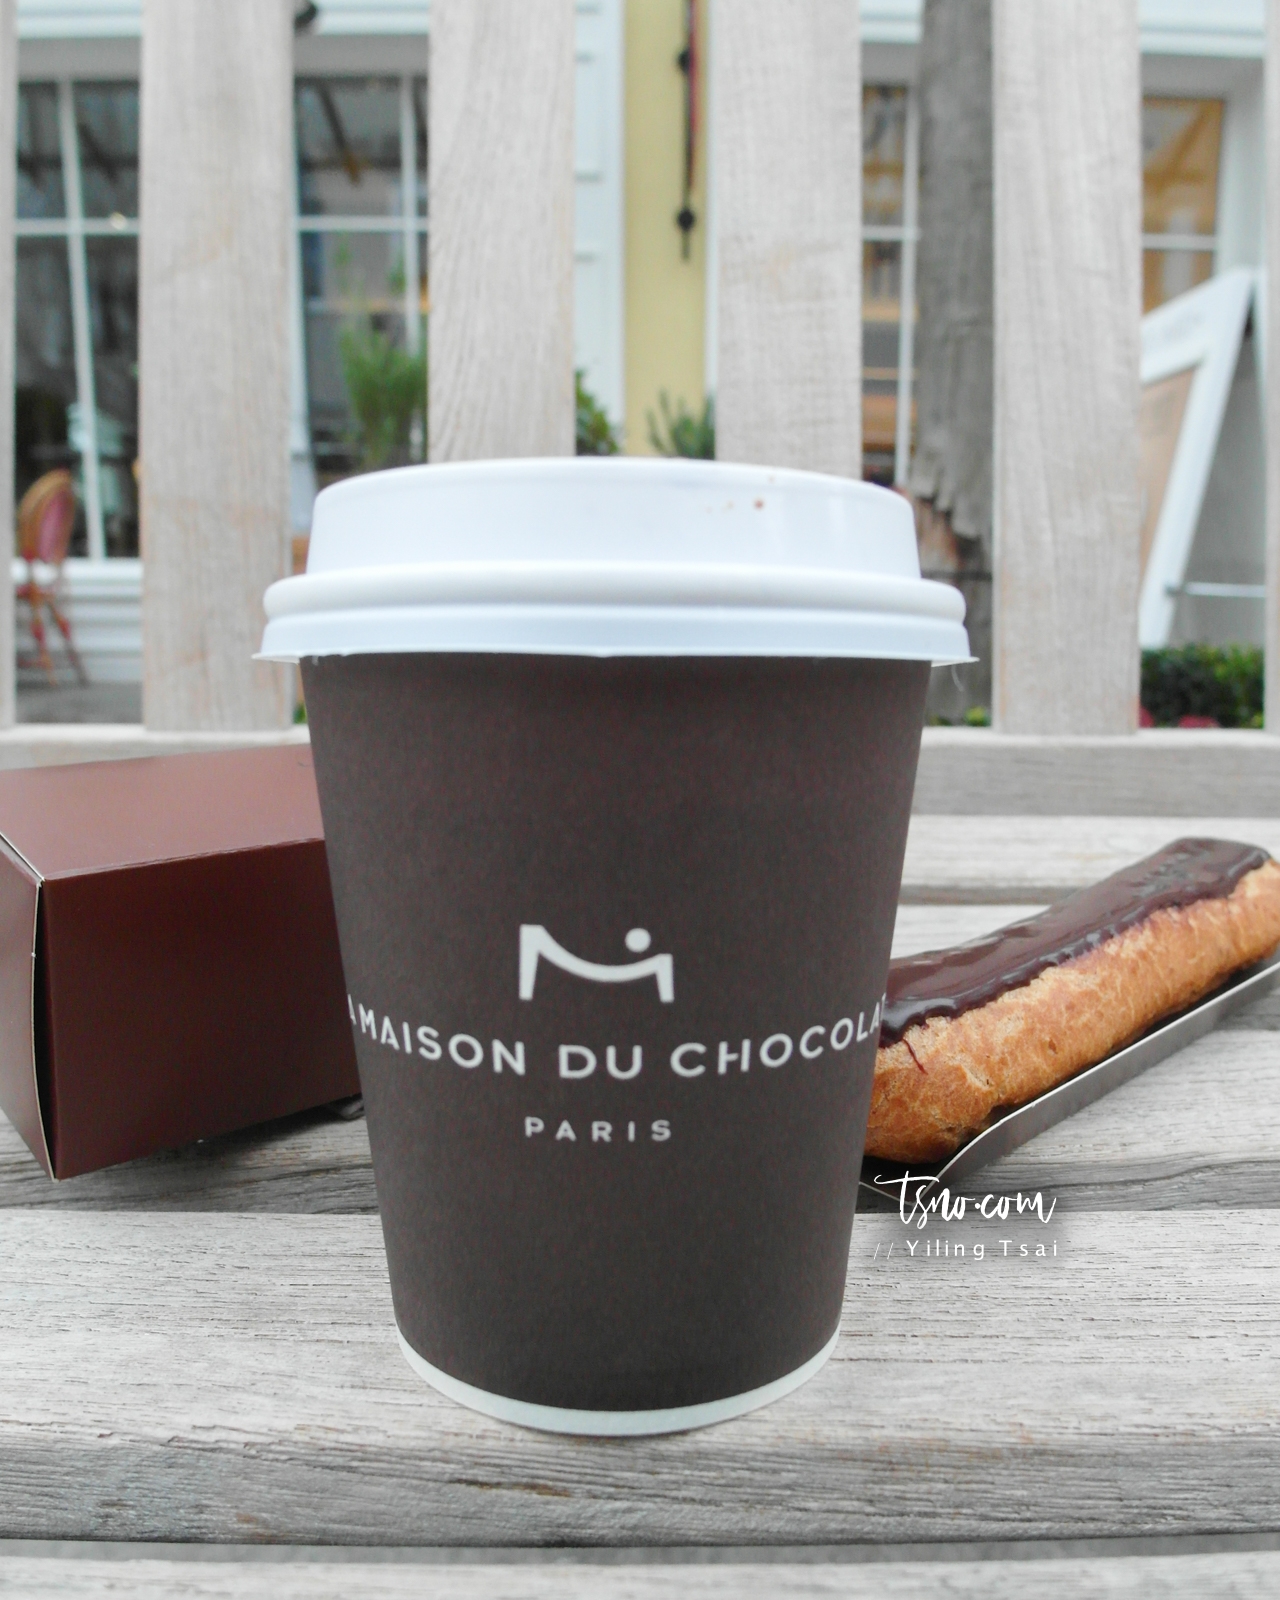 法國巴黎甜點推薦 La Maison du Chocolat 心目中全世界最好喝的熱巧克力